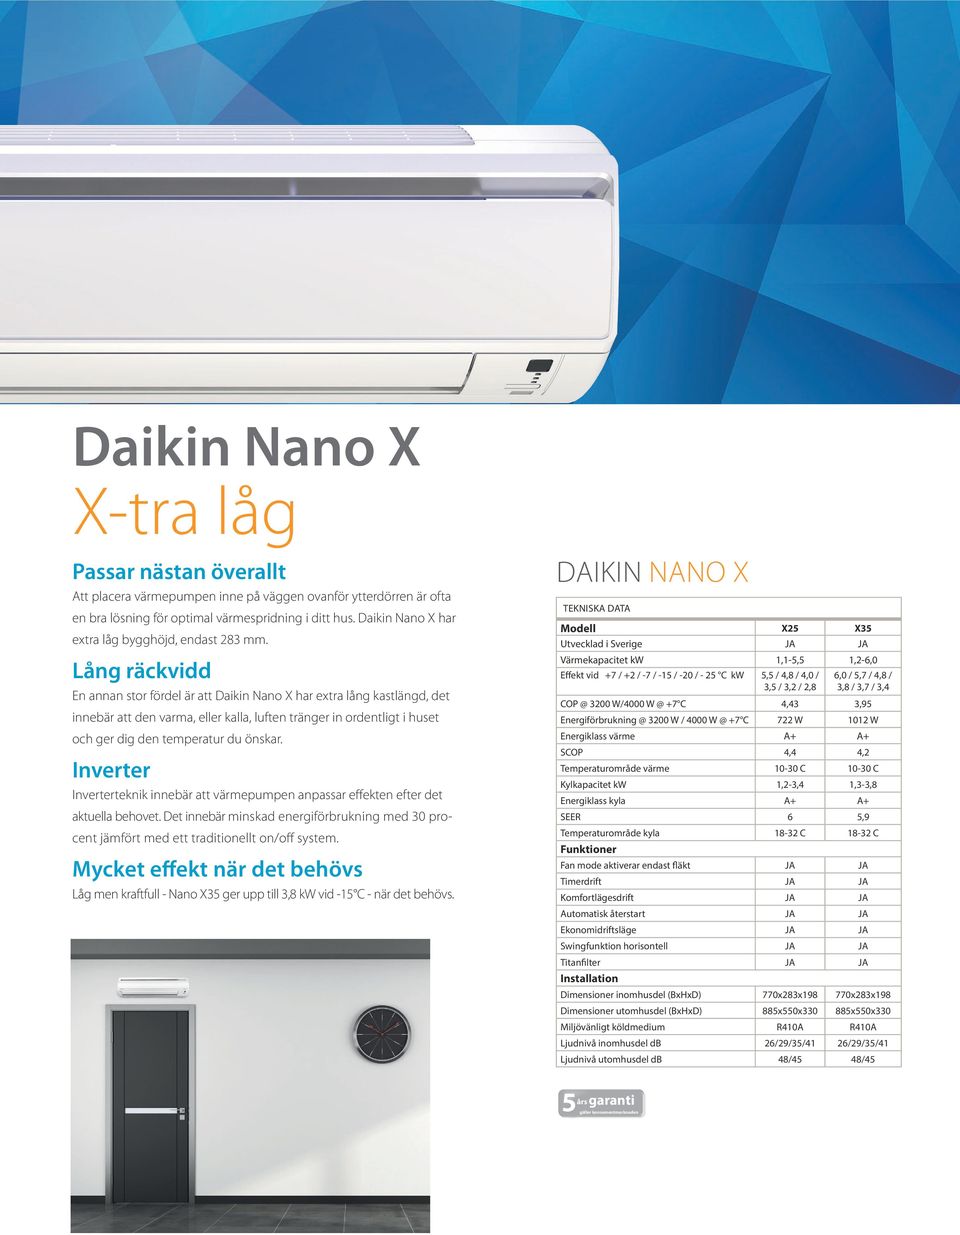 Lång räckvidd En annan stor fördel är att Daikin Nano X har extra lång kastlängd, det innebär att den varma, eller kalla, luften tränger in ordentligt i huset och ger dig den temperatur du önskar.